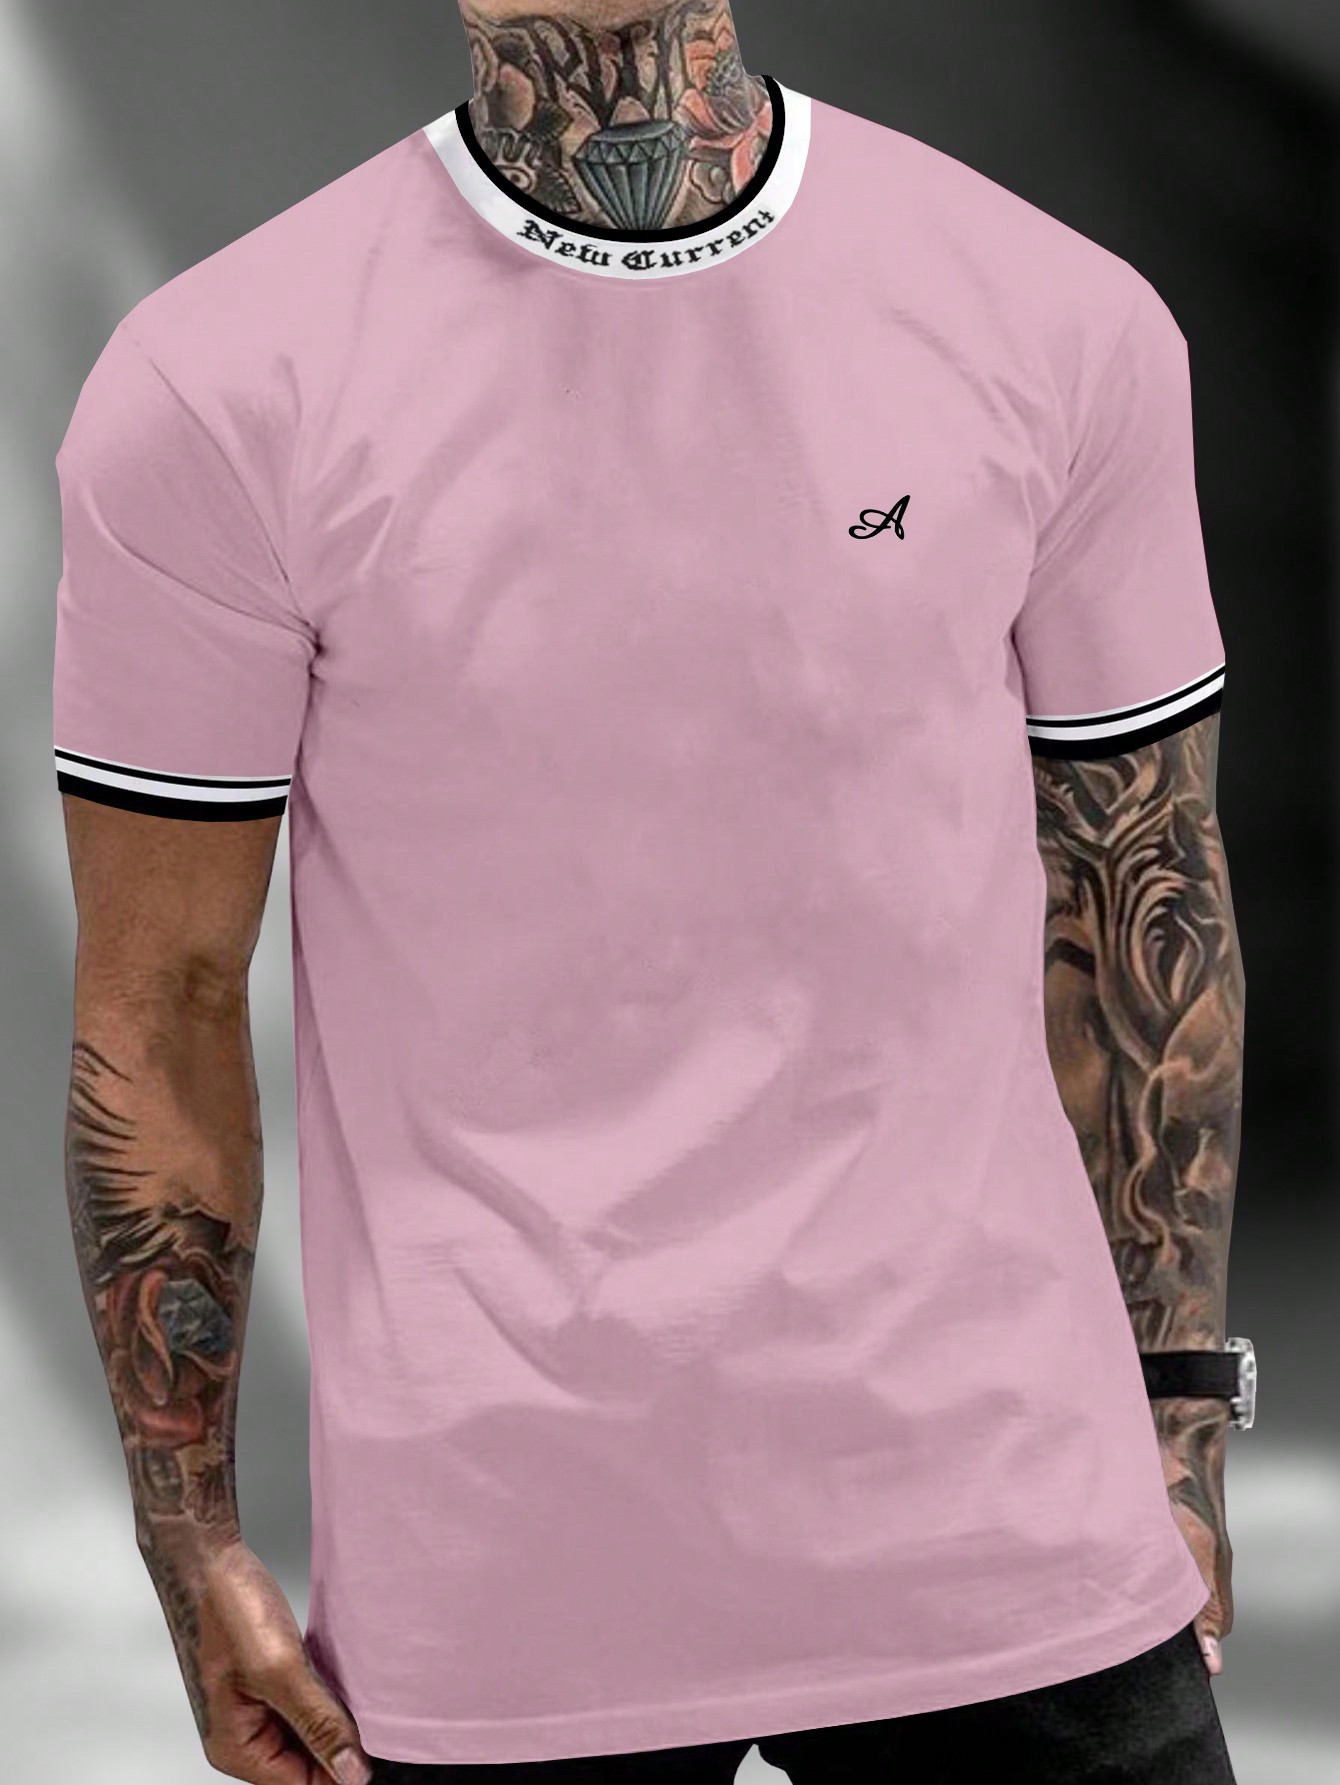 Мужская футболка с контрастным буквенным принтом Manfinity Homme и декоративной окантовкой, розовый футболка мужская с контрастной отделкой madison 170 голубой белый размер xl